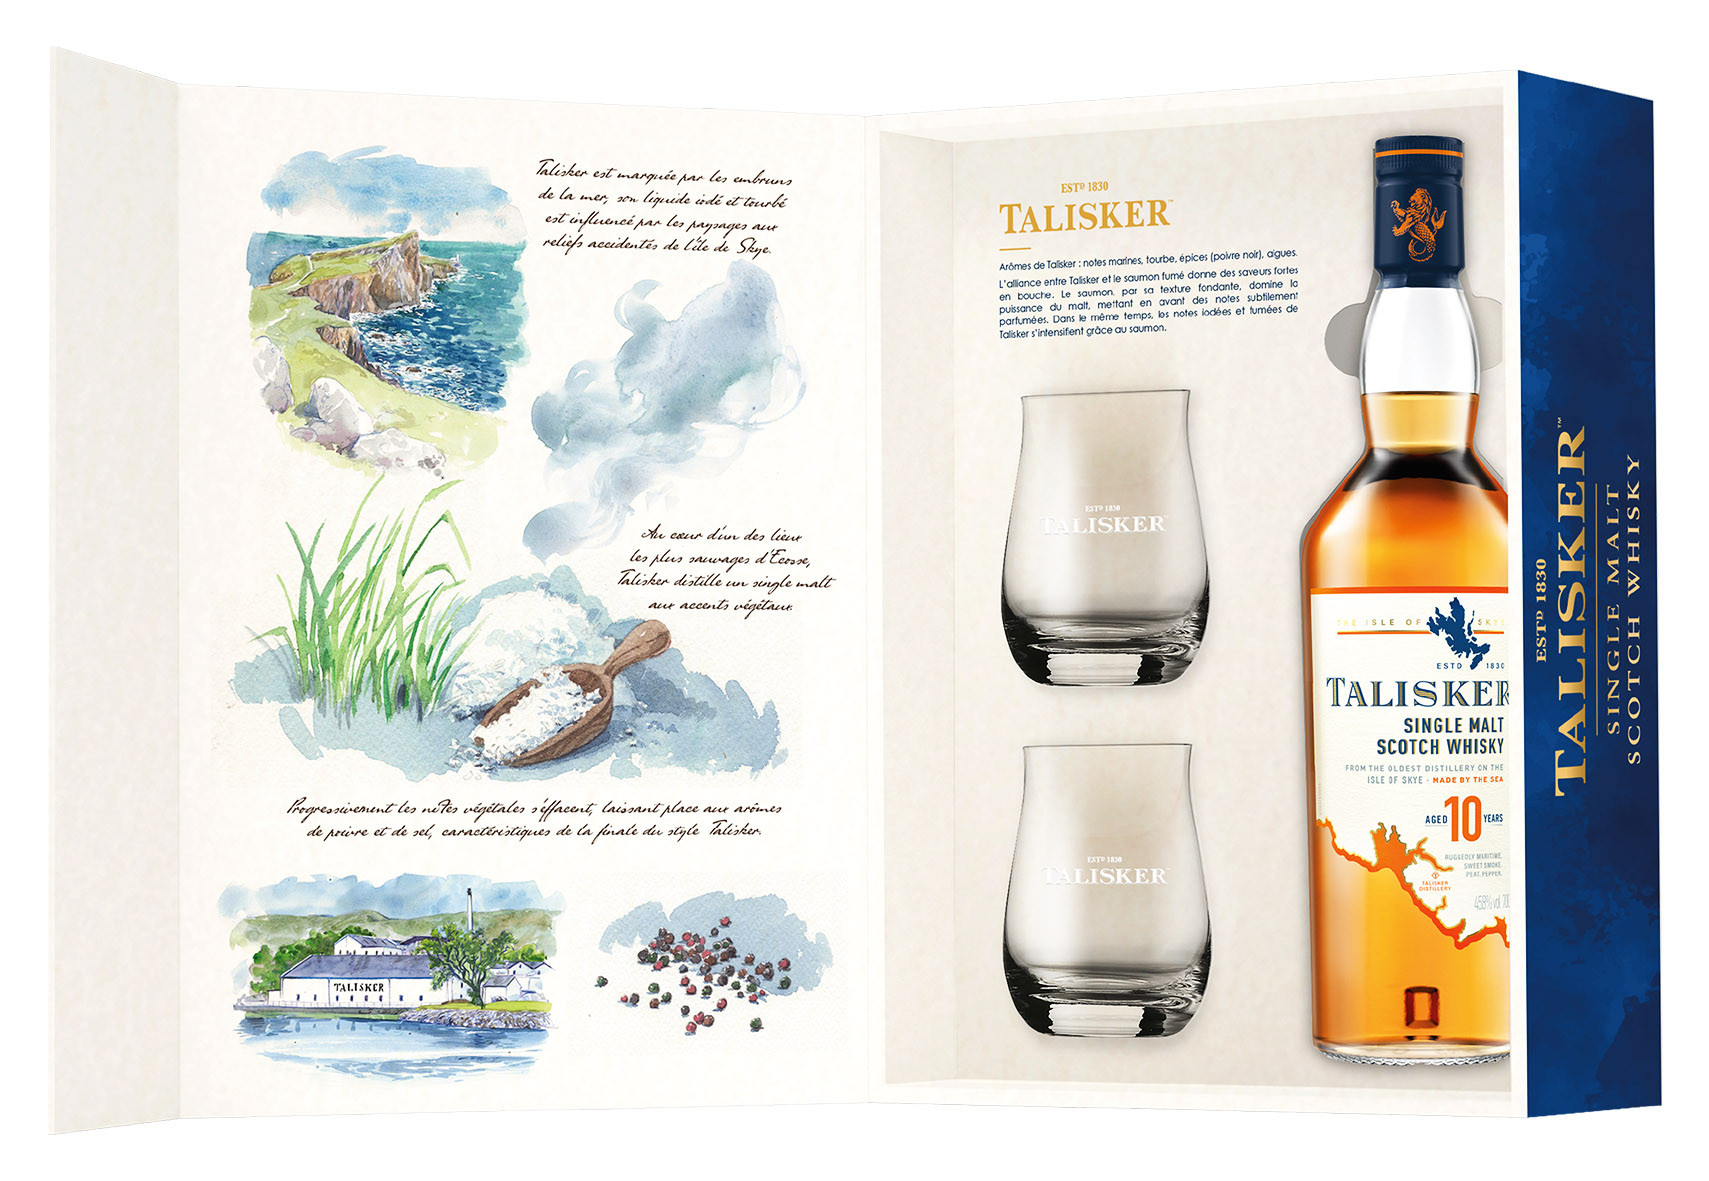 Acheter du Whisky Talisker 10 ans Single Malt 70cl vendu en Coffret 2  verres Saveurs d'Ecosse sur notre site - Odyssee-vins